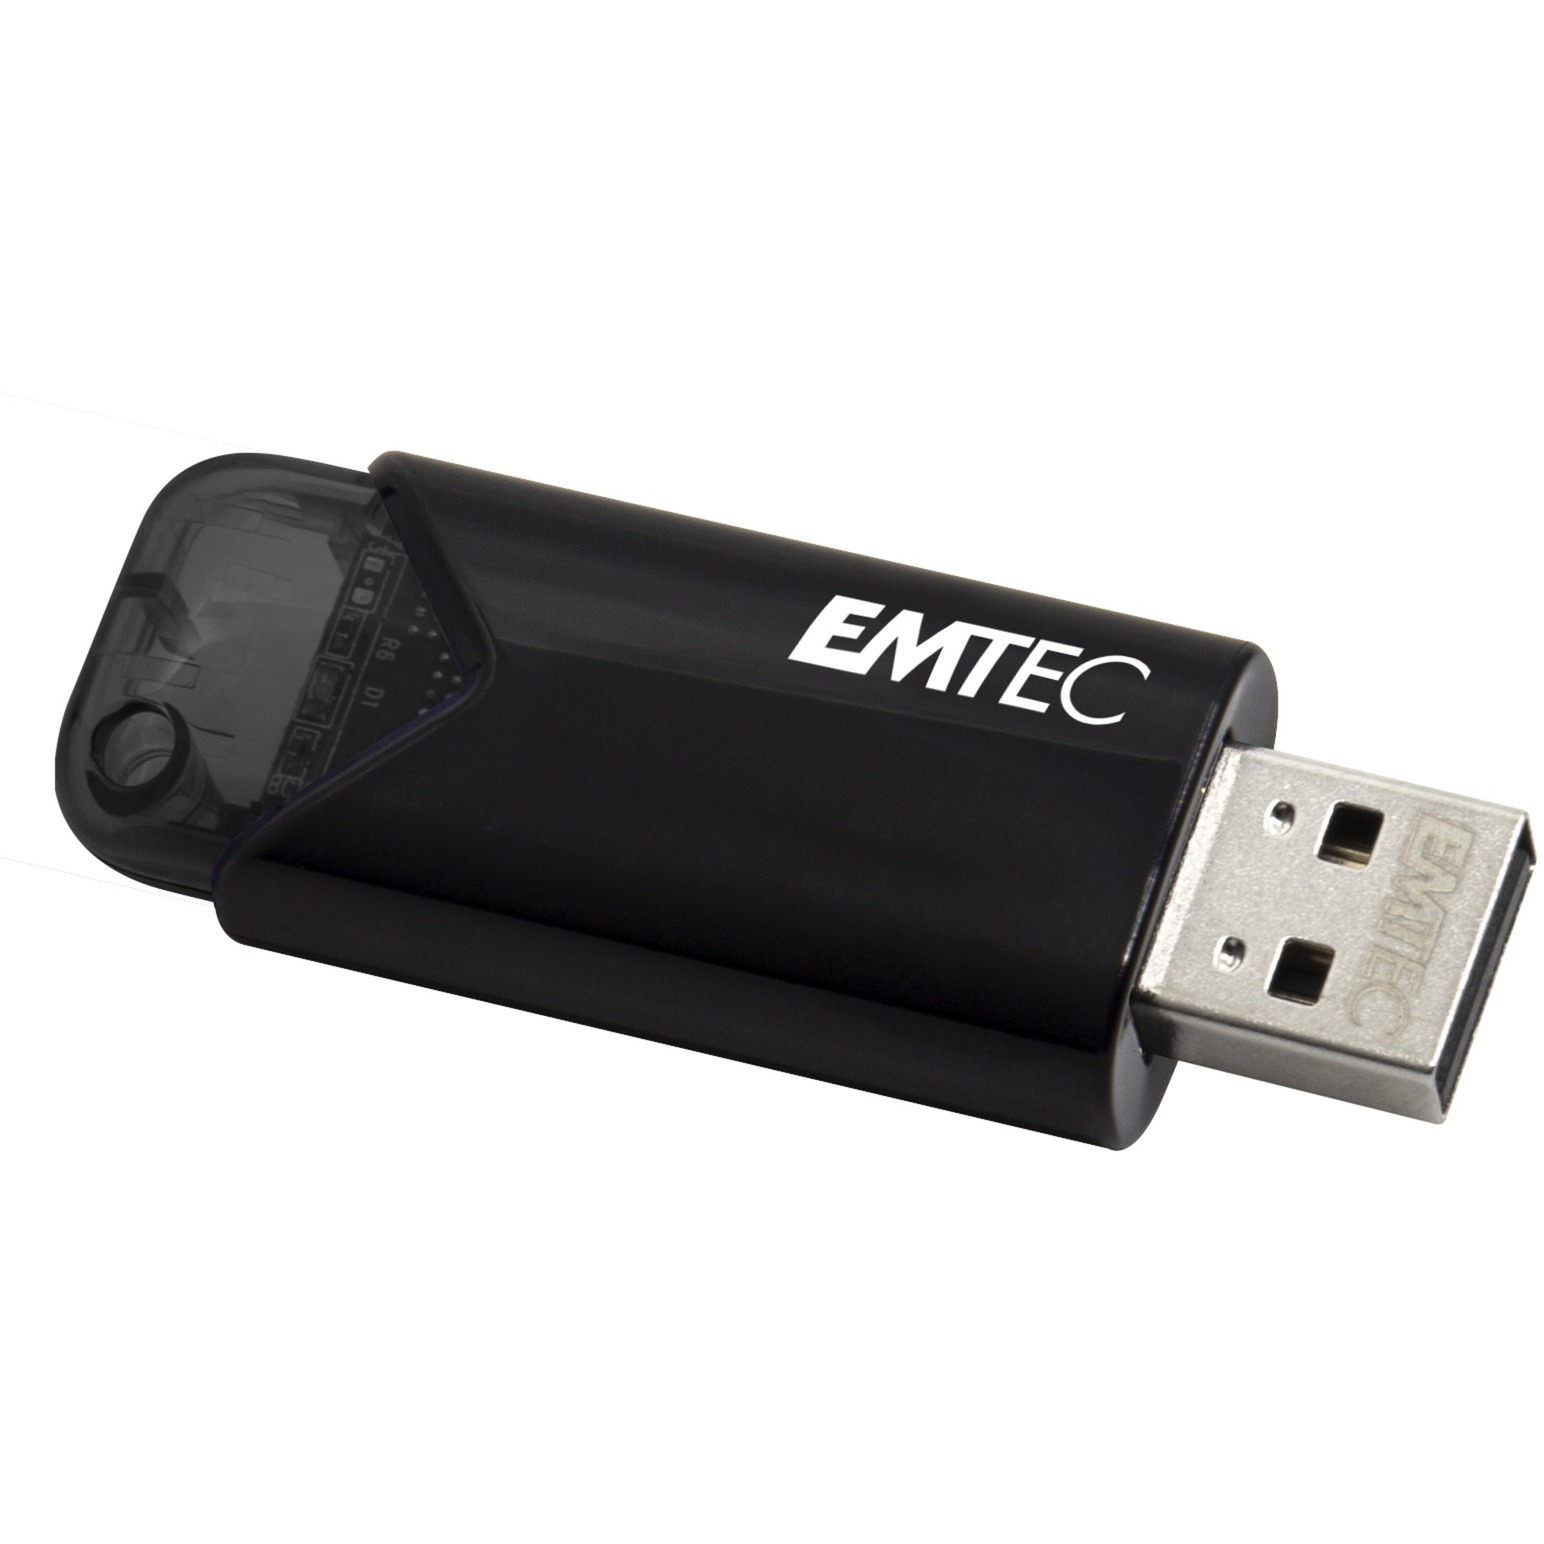 Image of Alternate - B110 Click Easy 512 GB, USB-Stick online einkaufen bei Alternate